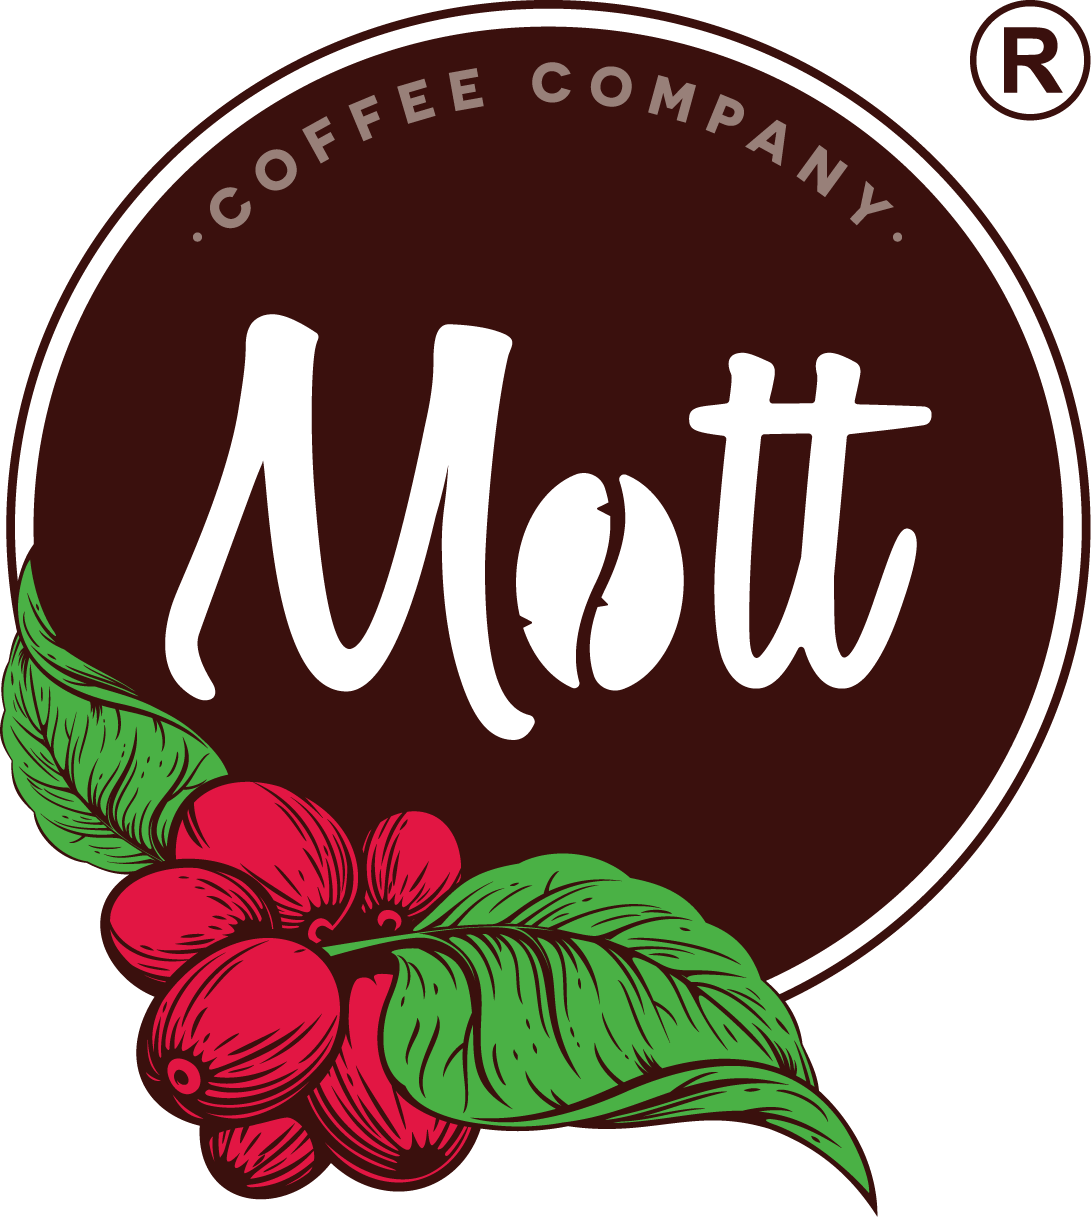 @mott.coffee